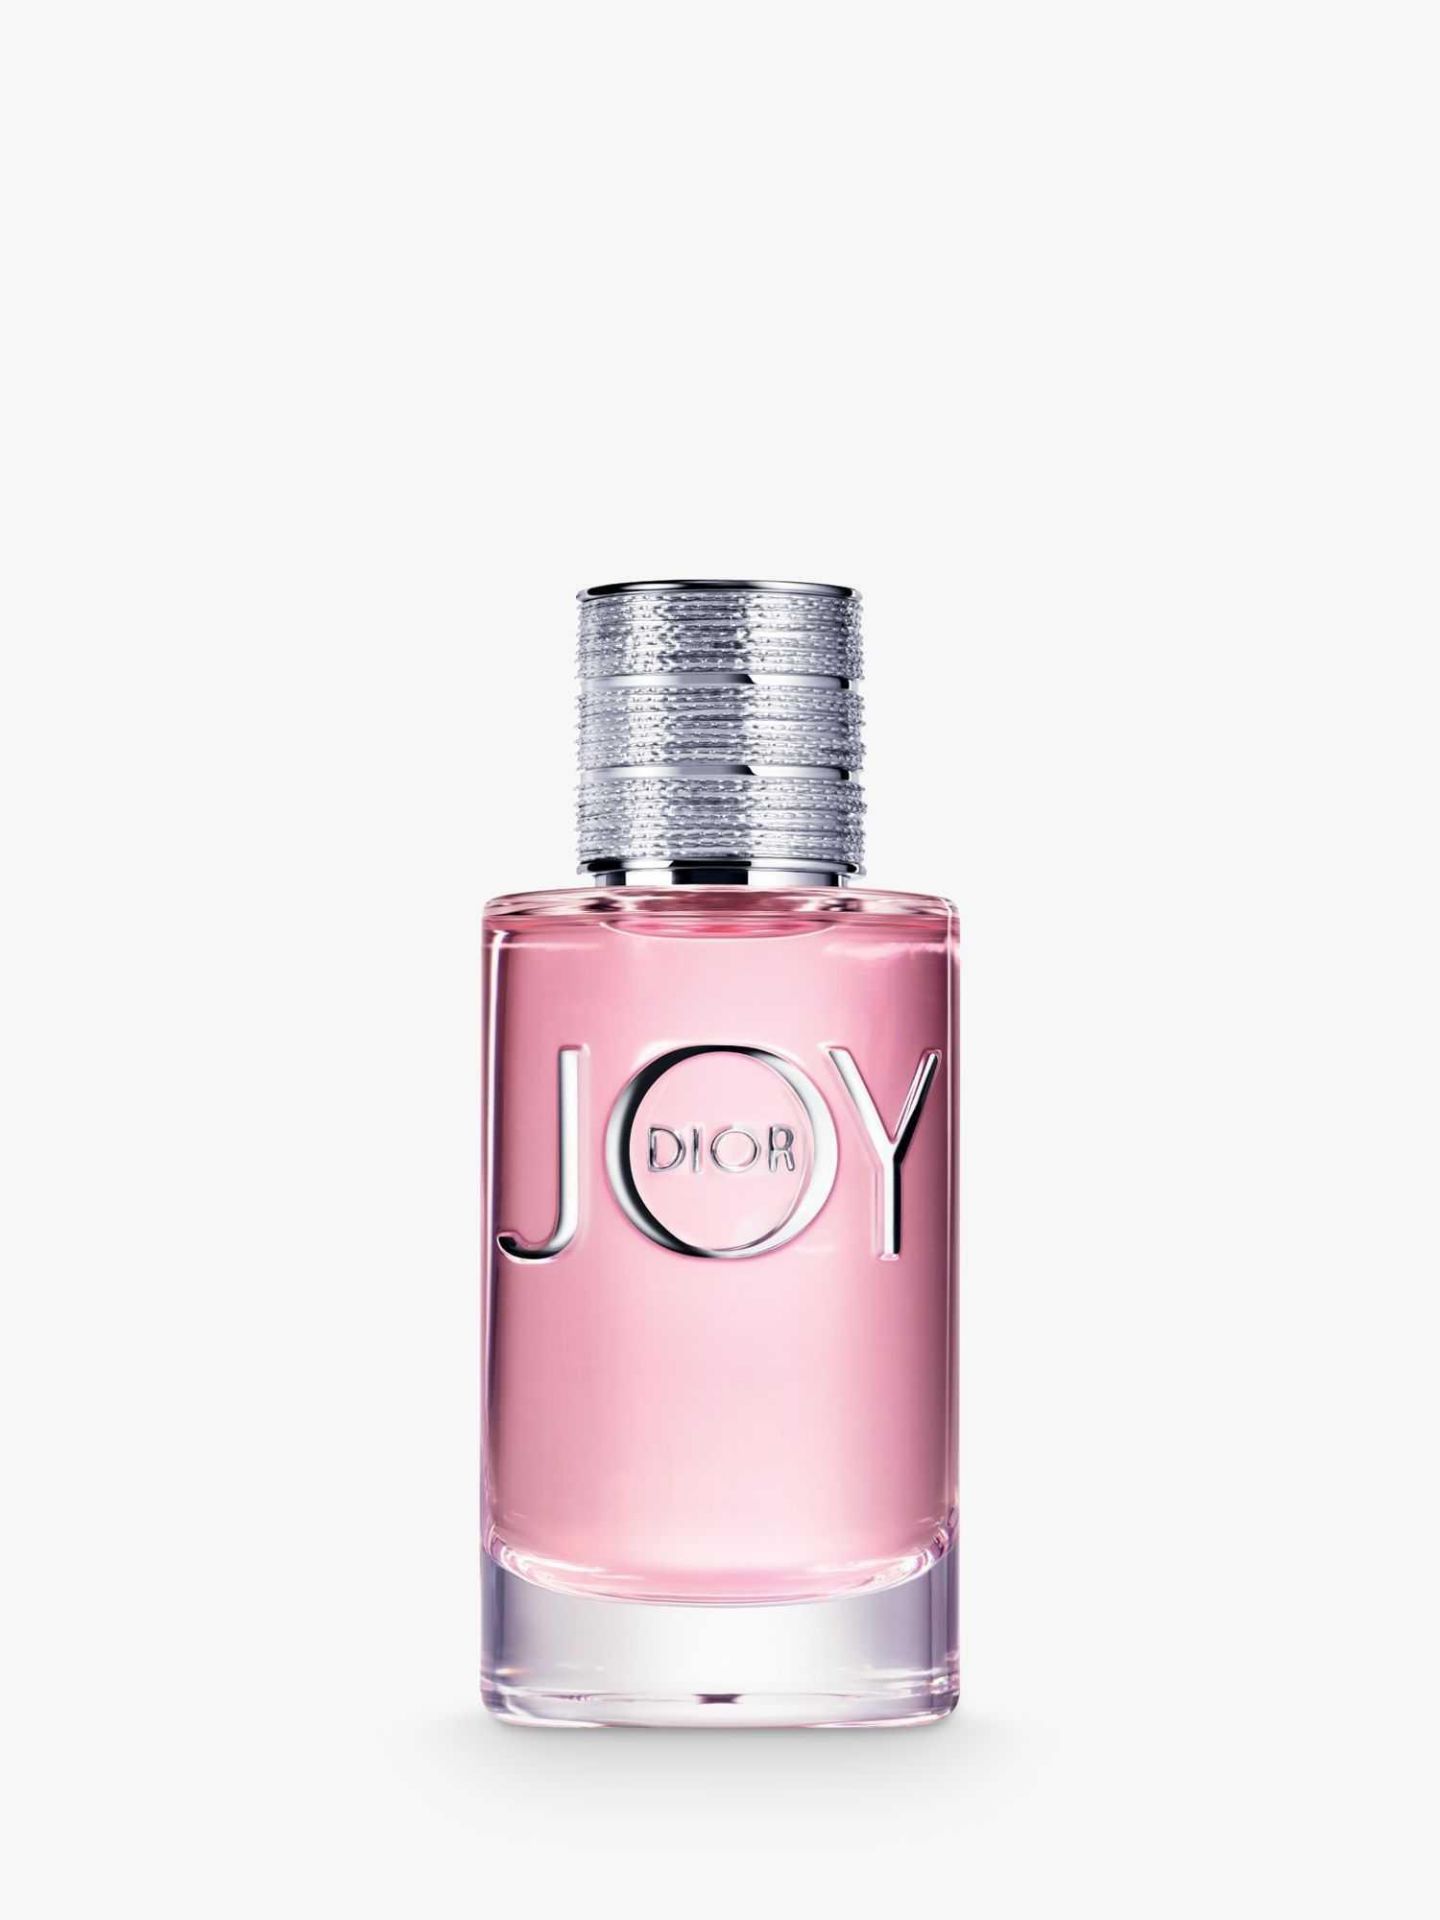 RRP £85 Unboxed Tester Bottle Of Christian Dior Joy 90Ml Eau De Parfum